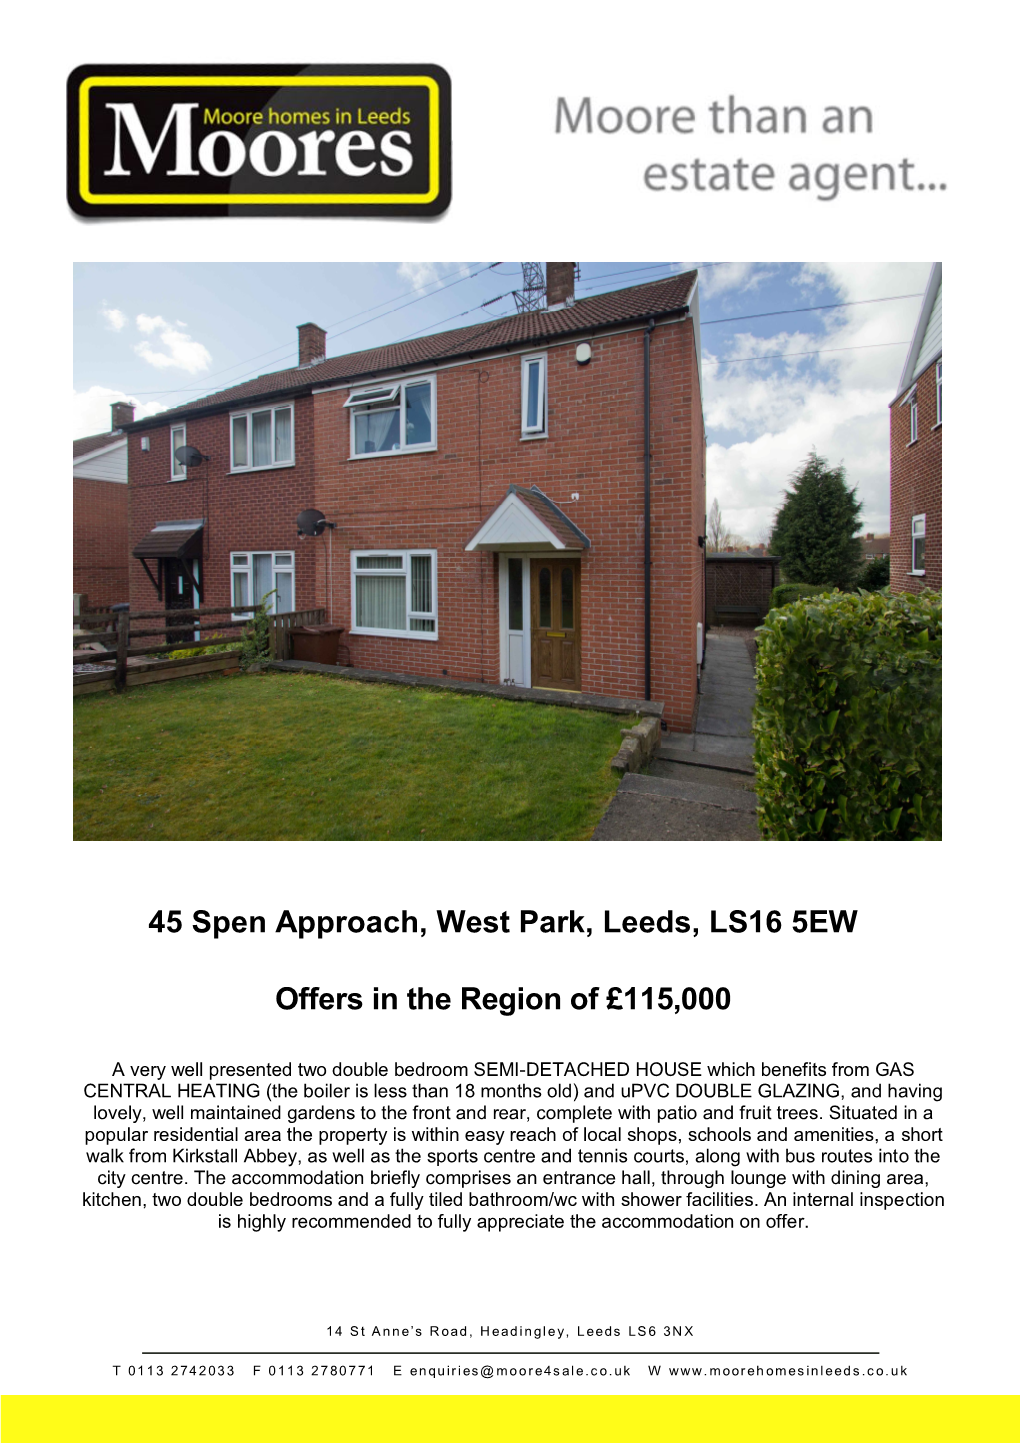 45 Spen Approach, West Park, Leeds, LS16 5EW Offers in the Region Of